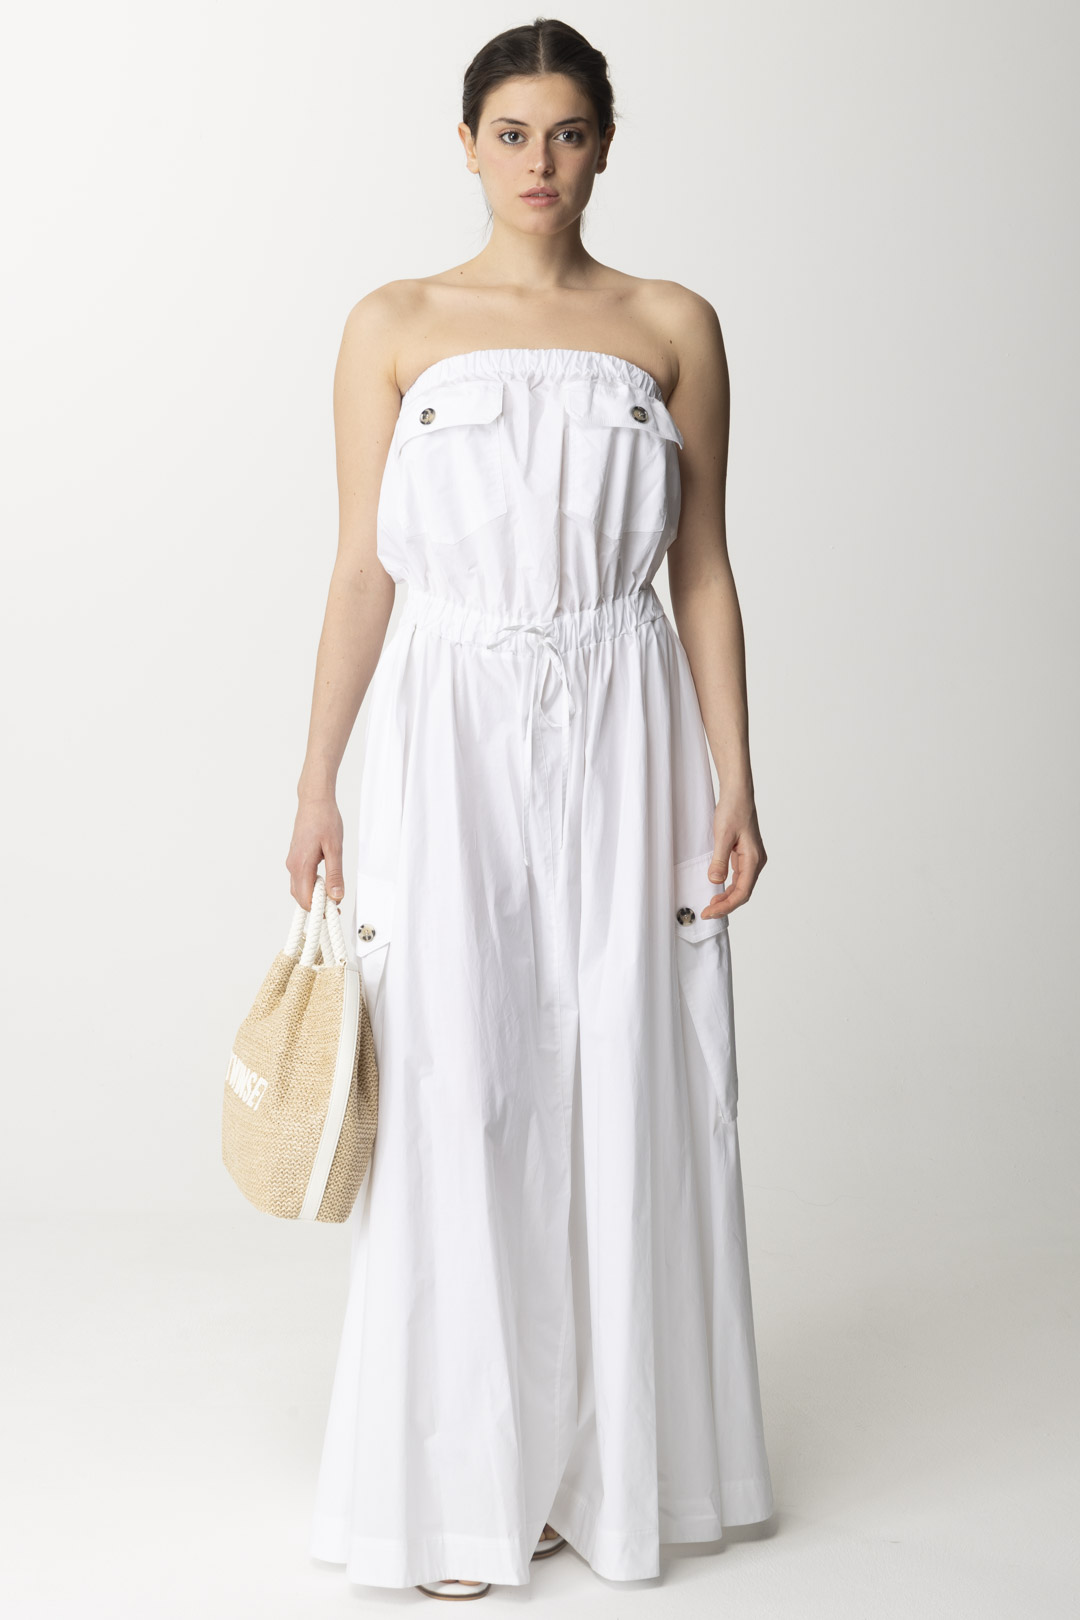 Vorschau: Aniye By Cory langes Kleid mit Taschen WHITE